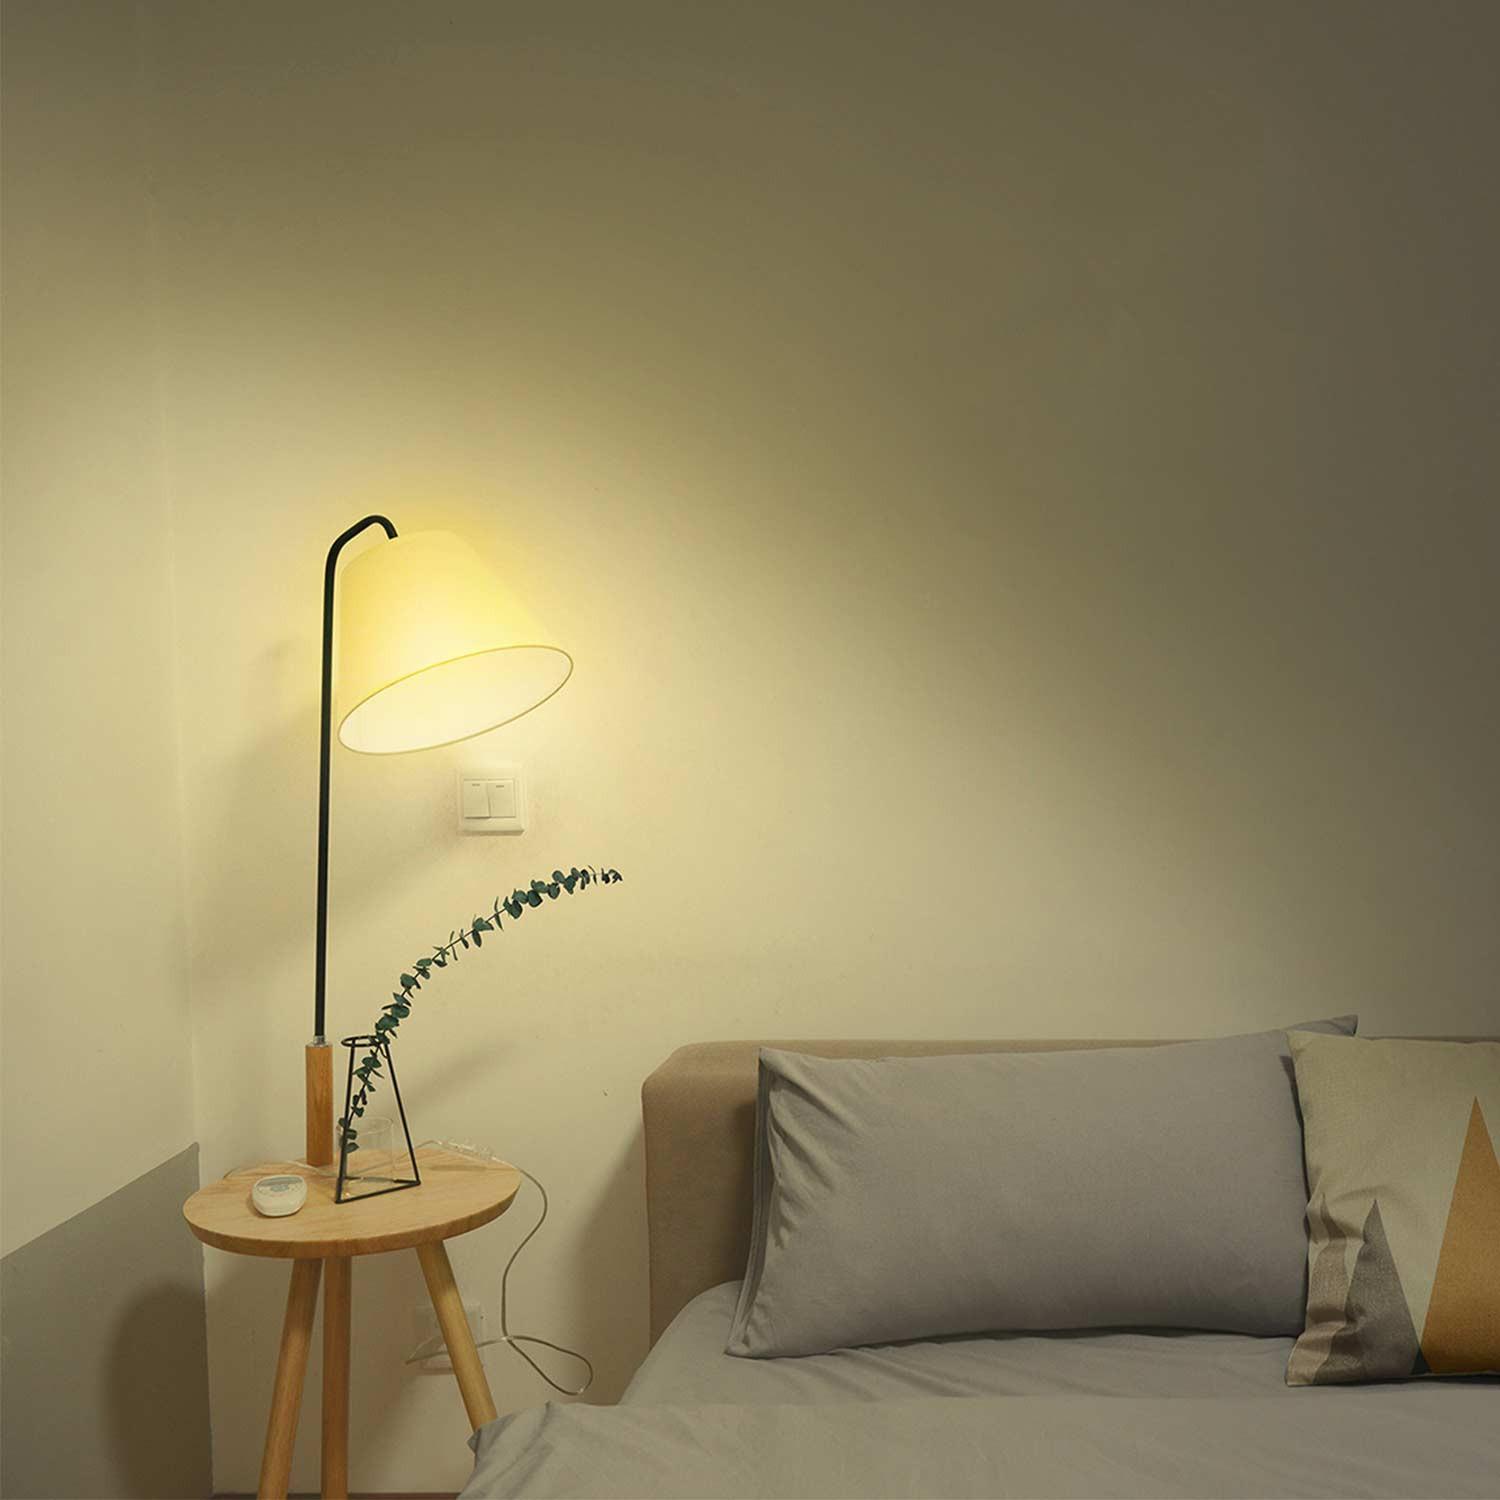 Hombli Smart Bulb E27 White-Lampe 3er-Set + gratis Smart Bulb E27 White 3er-Set - Weißlicht im Wohnzimmer